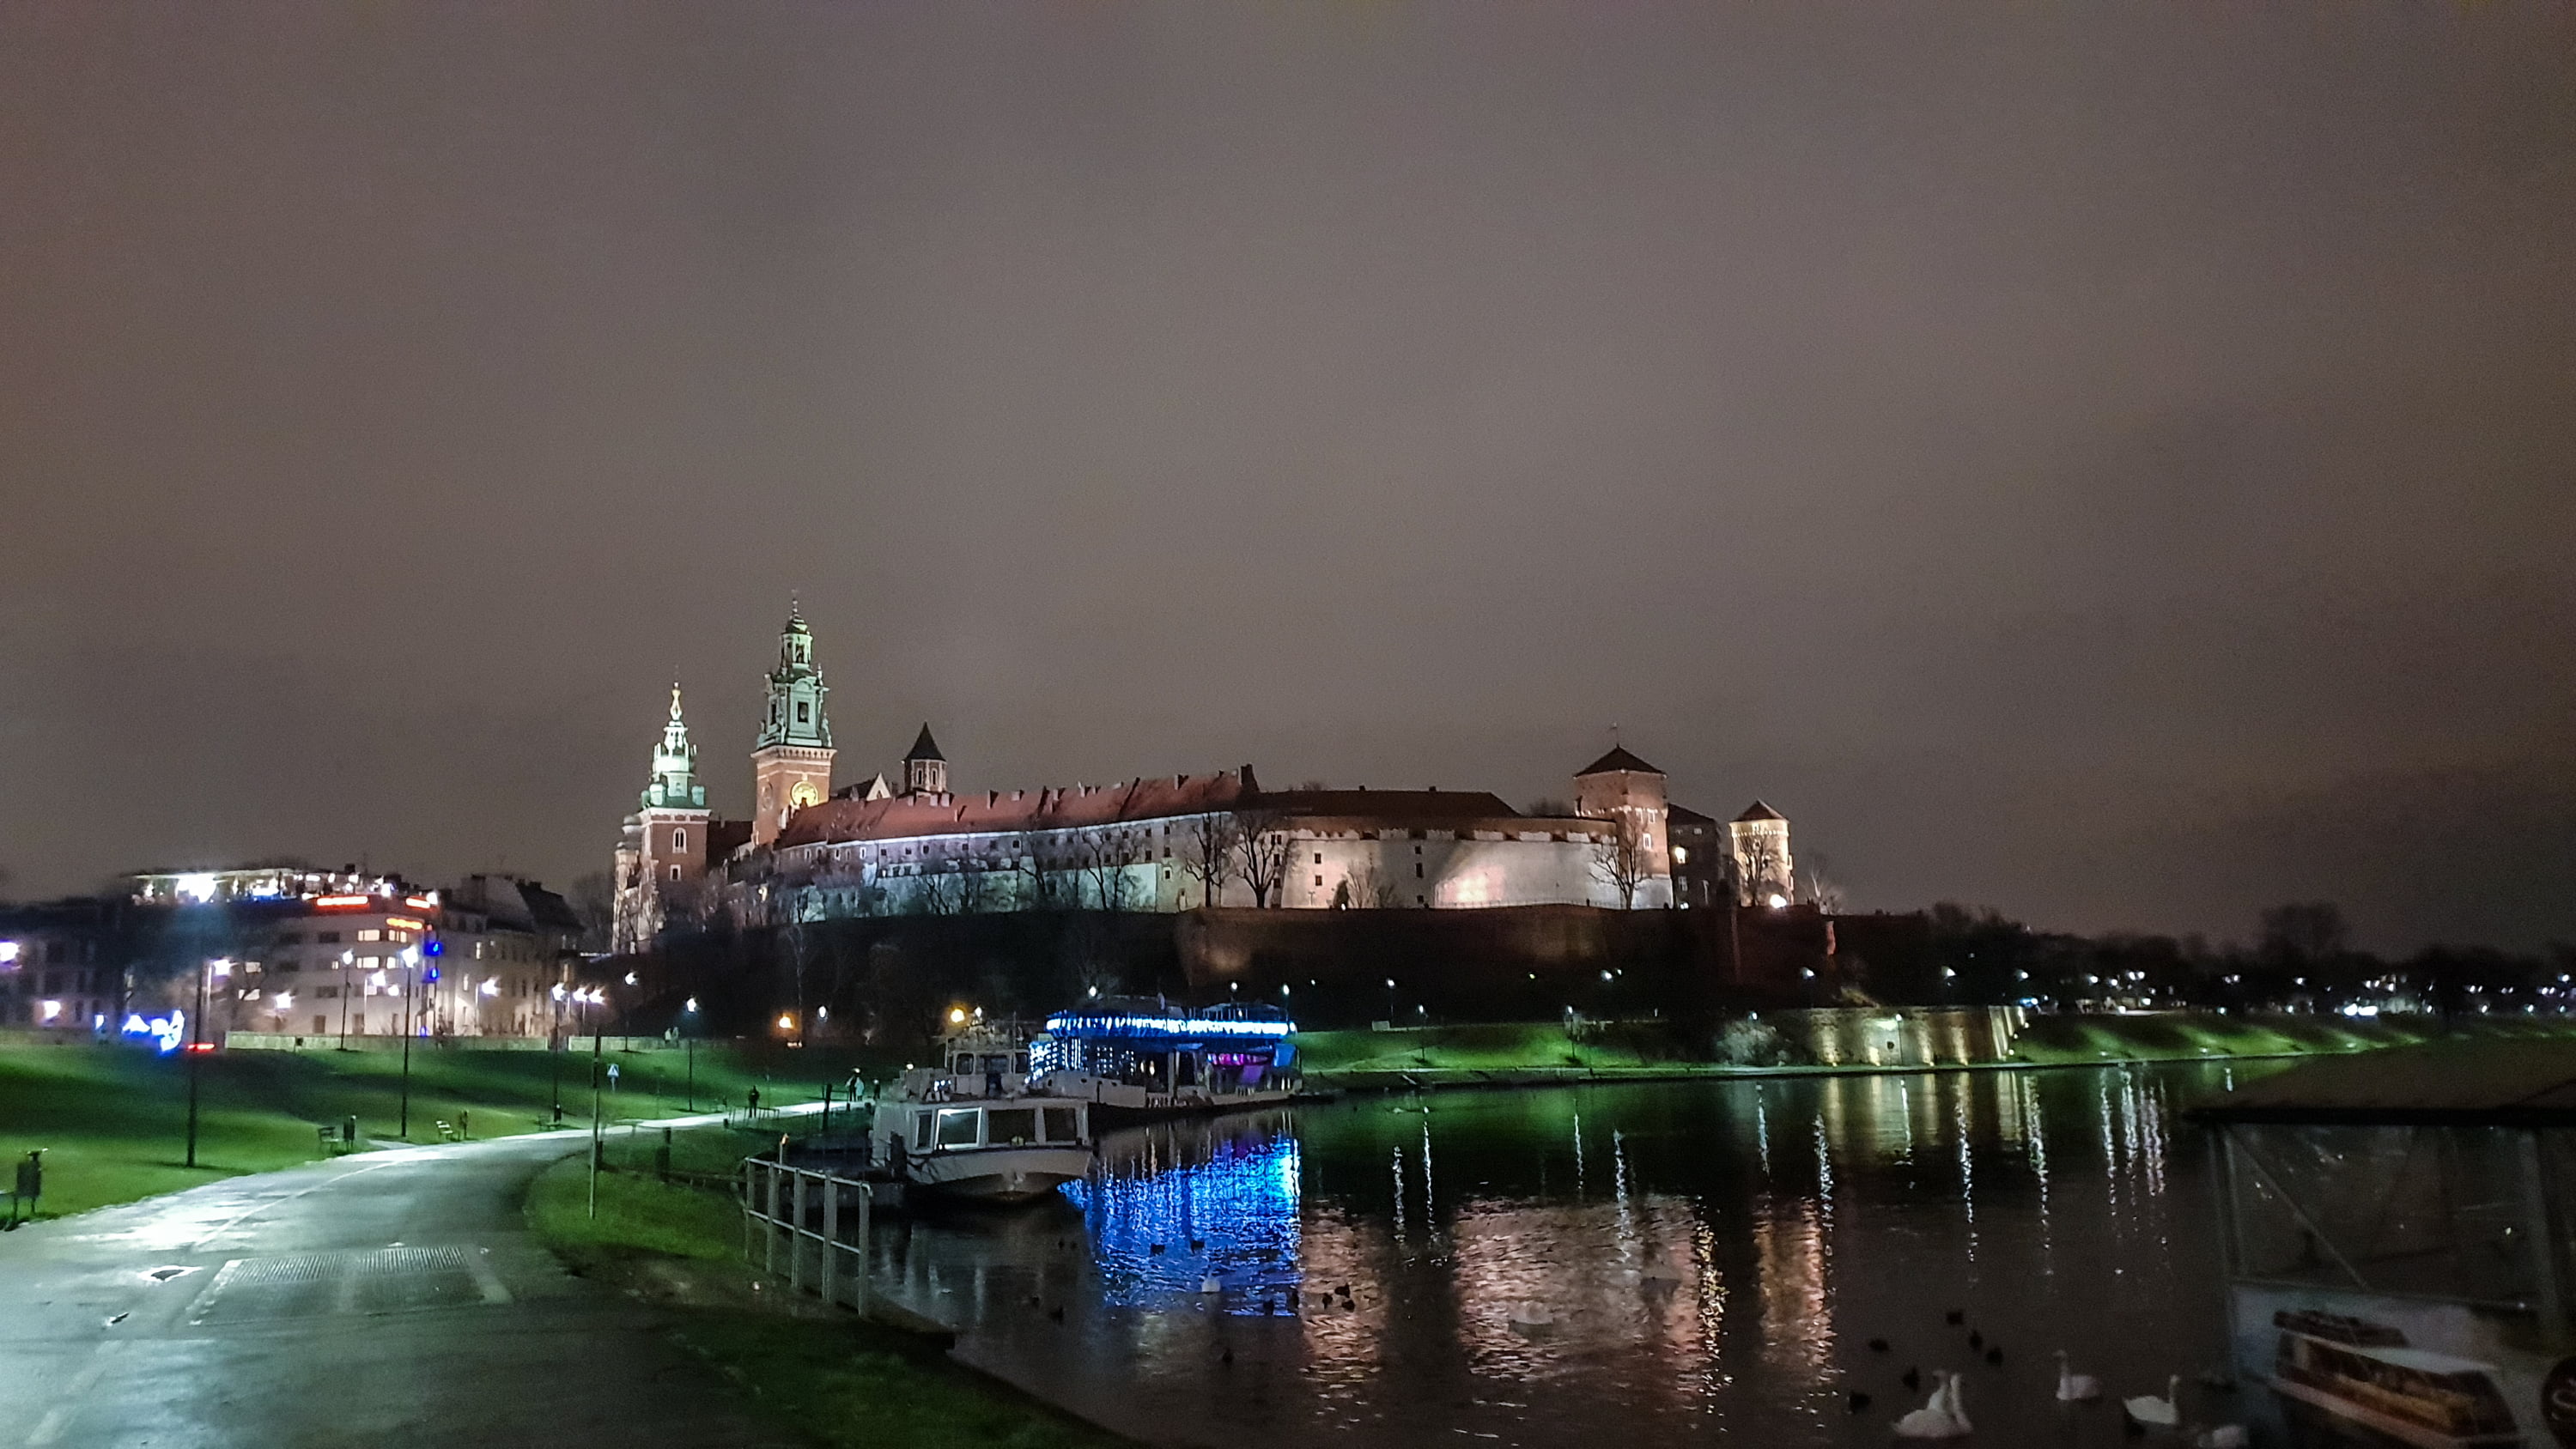 Вавельский замок ночью